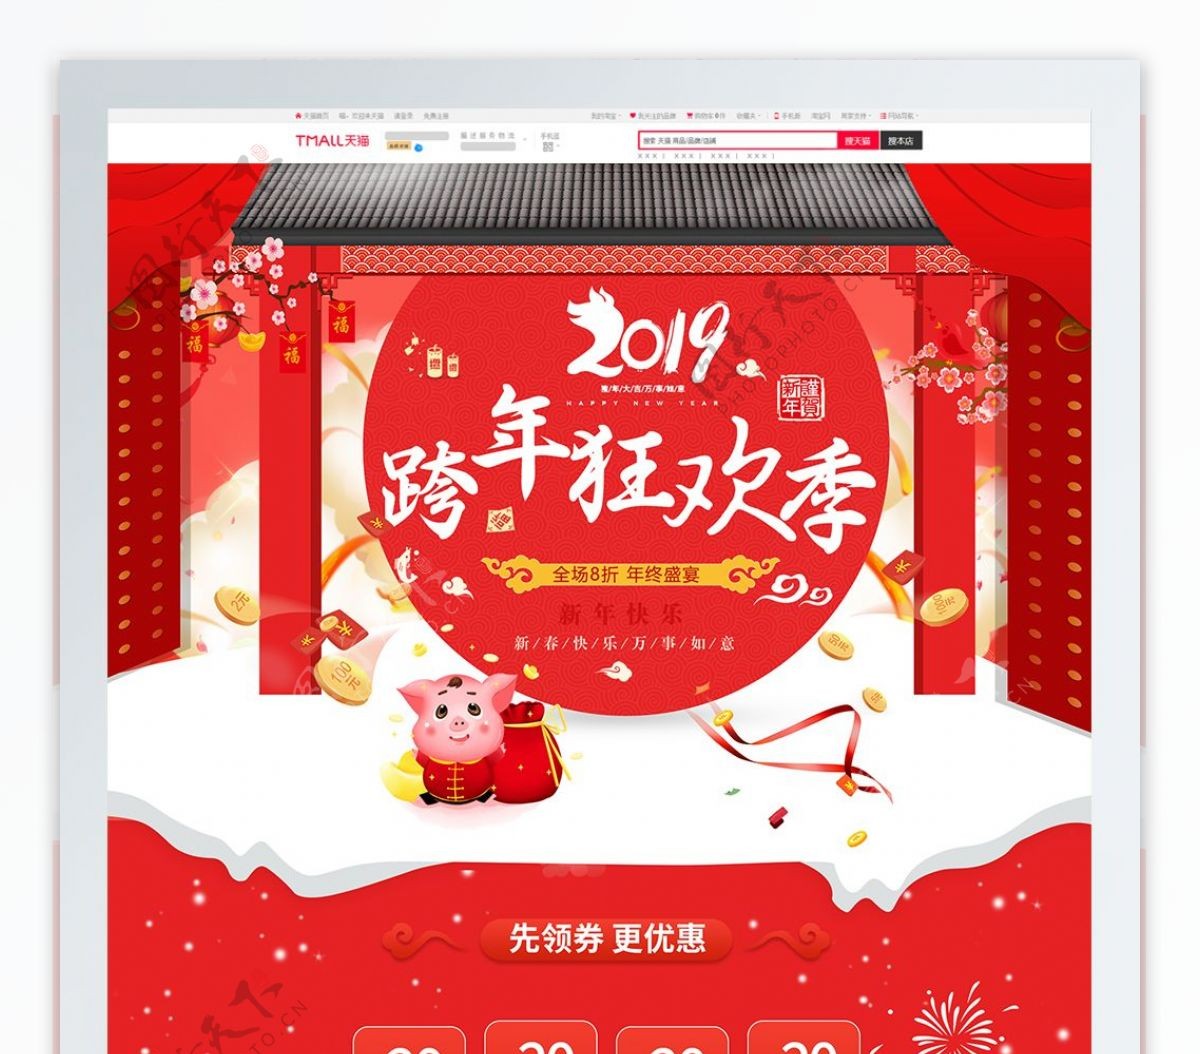 红色喜庆电商促销跨年狂欢淘宝首页促销模板